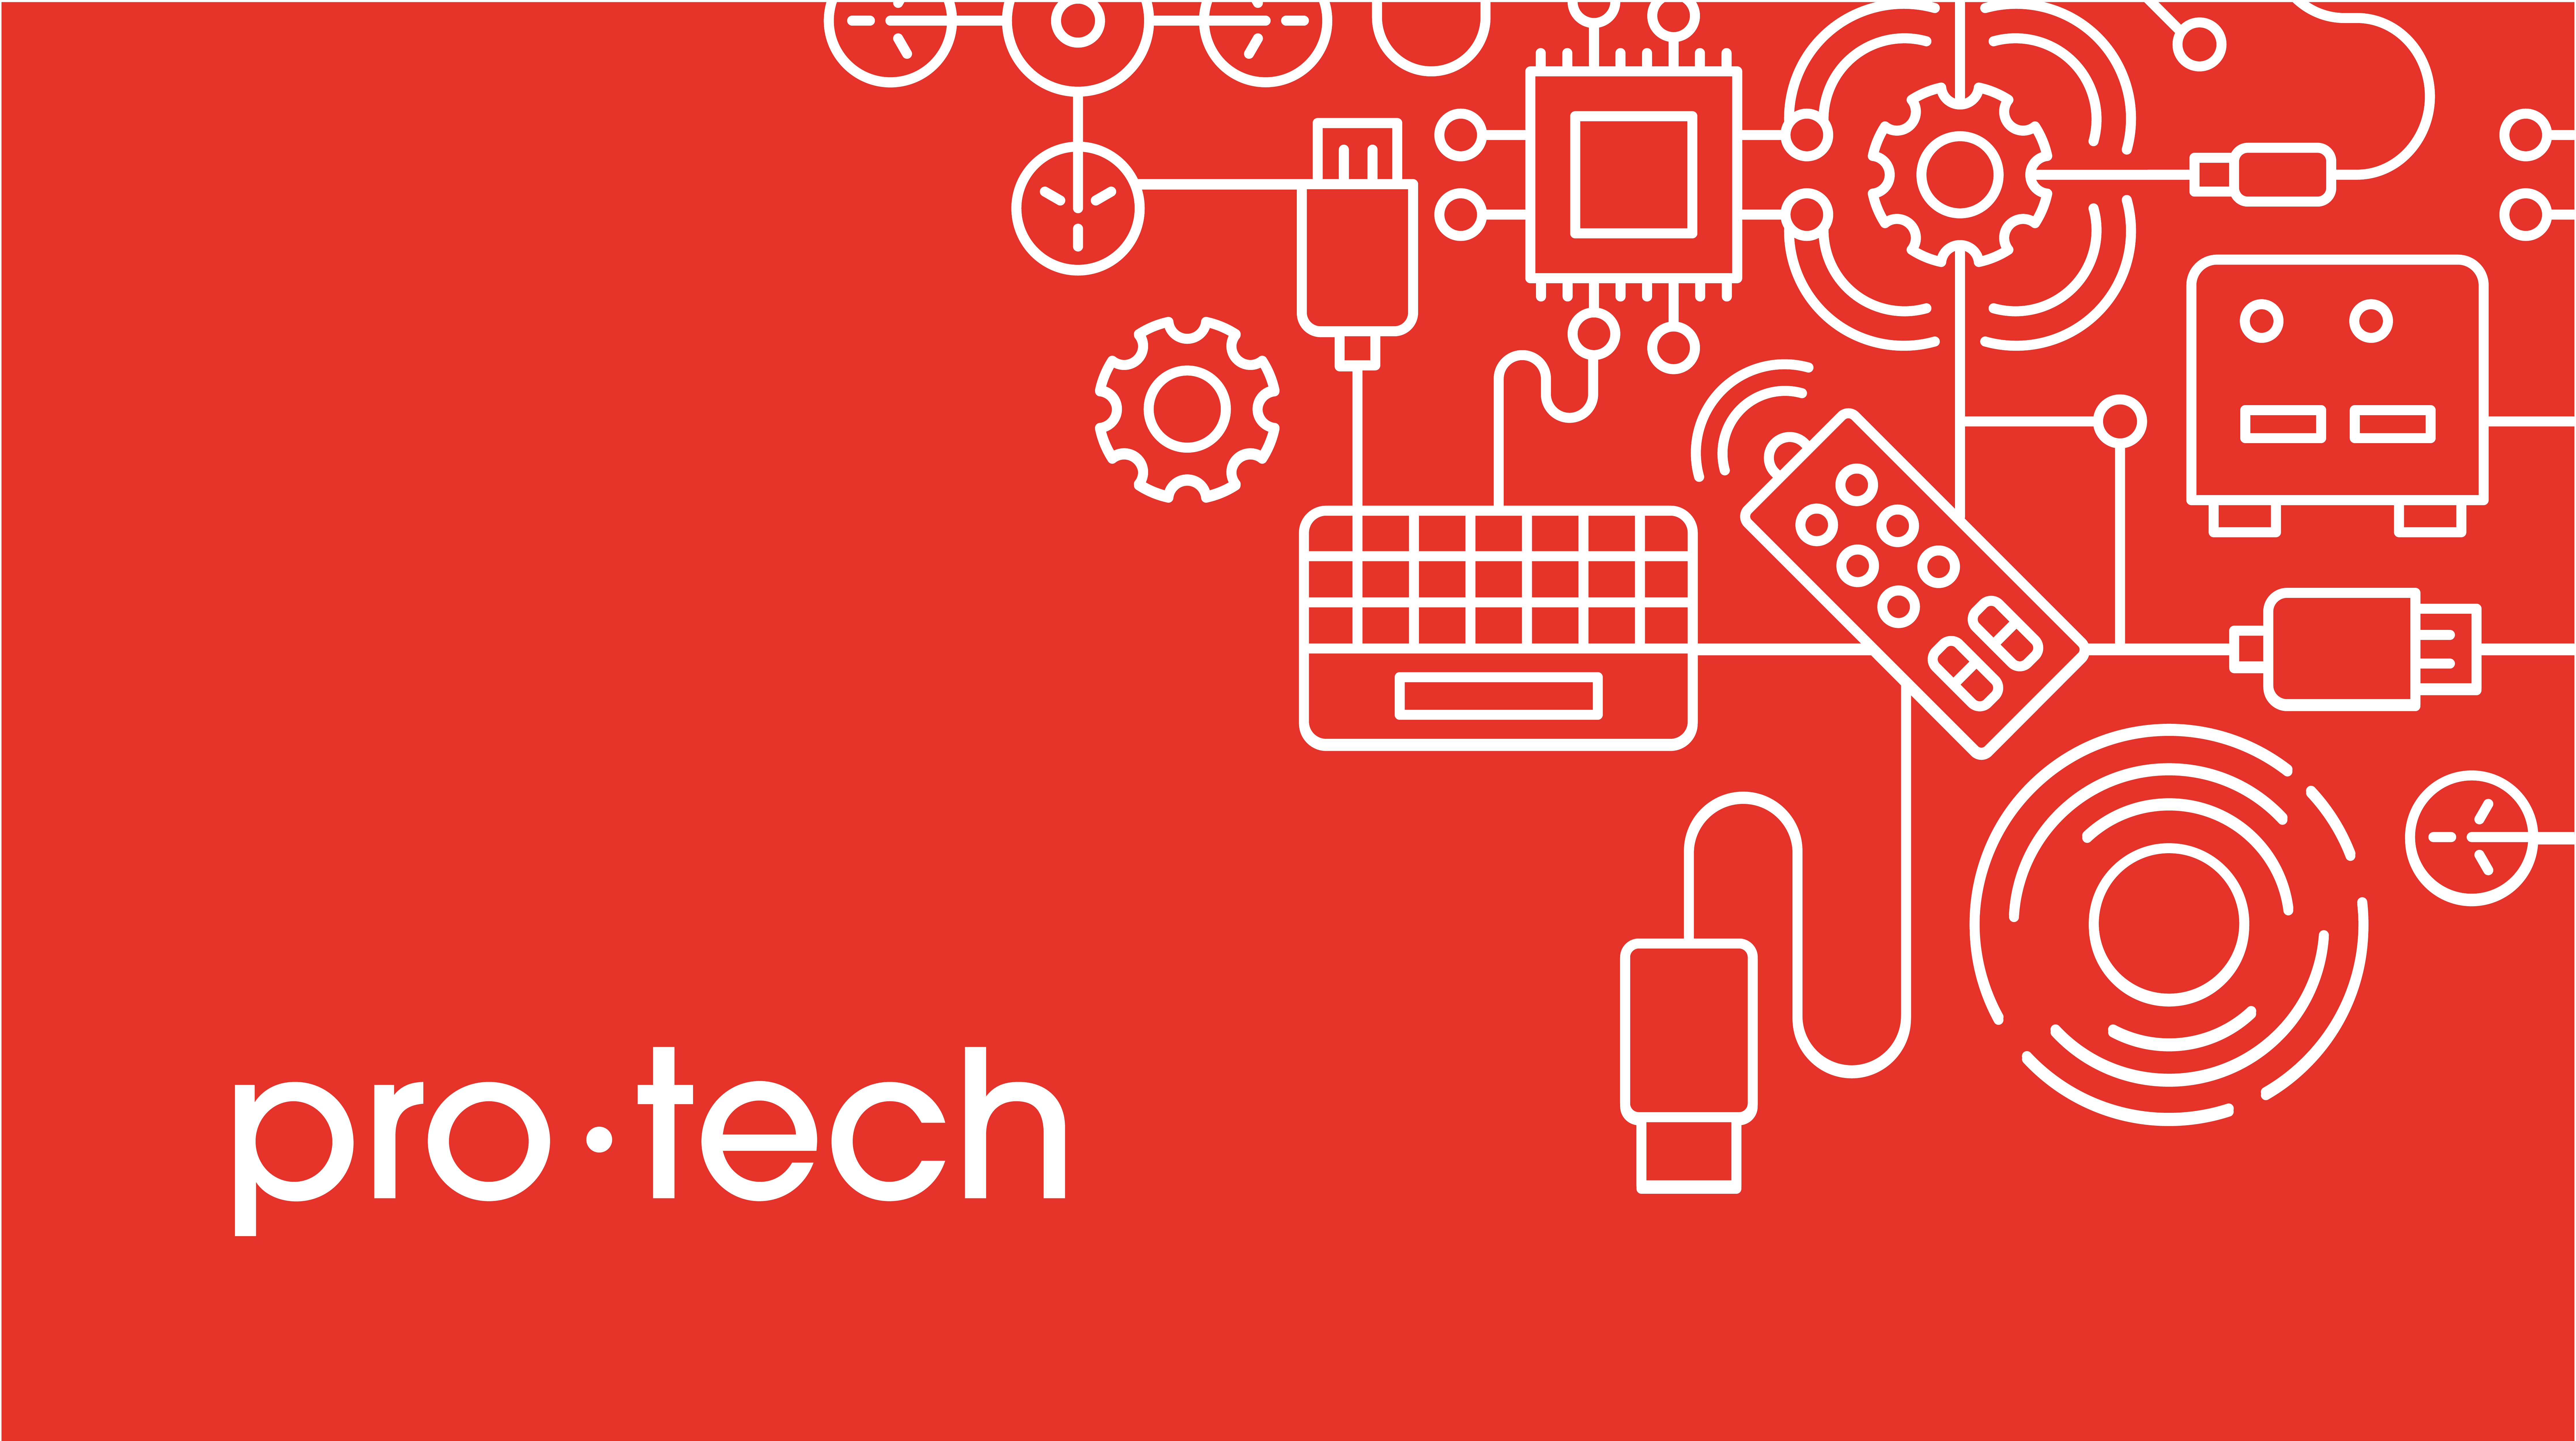 Pro Tech Logo